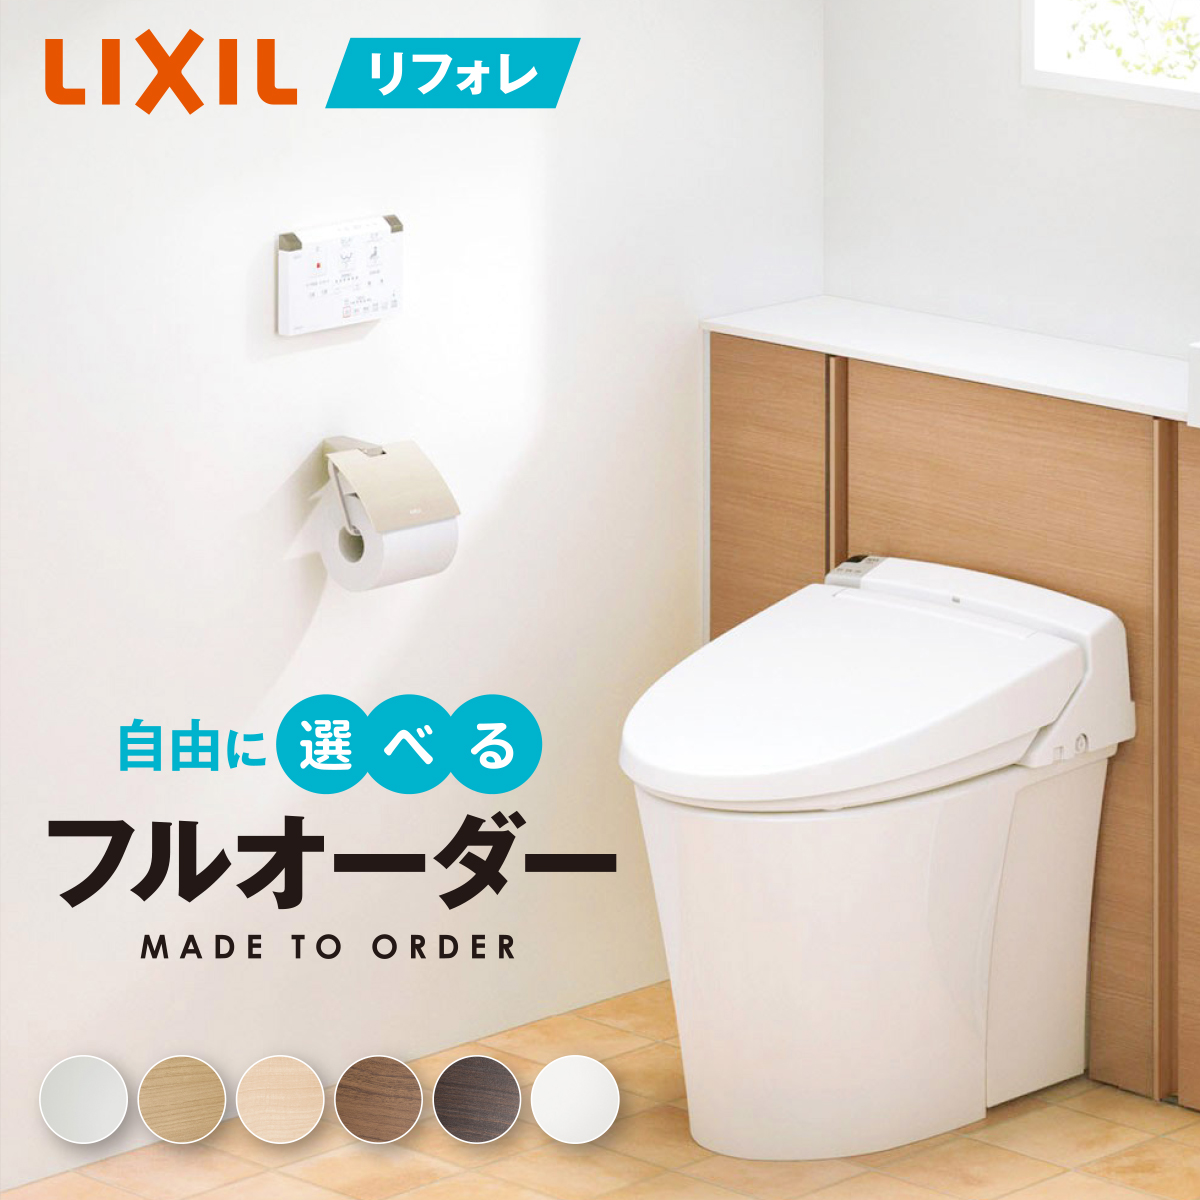 LIXIL アメージュ便器 トイレ 手洗あり LIXIL BC-Z30P--DT-Z380-BW1